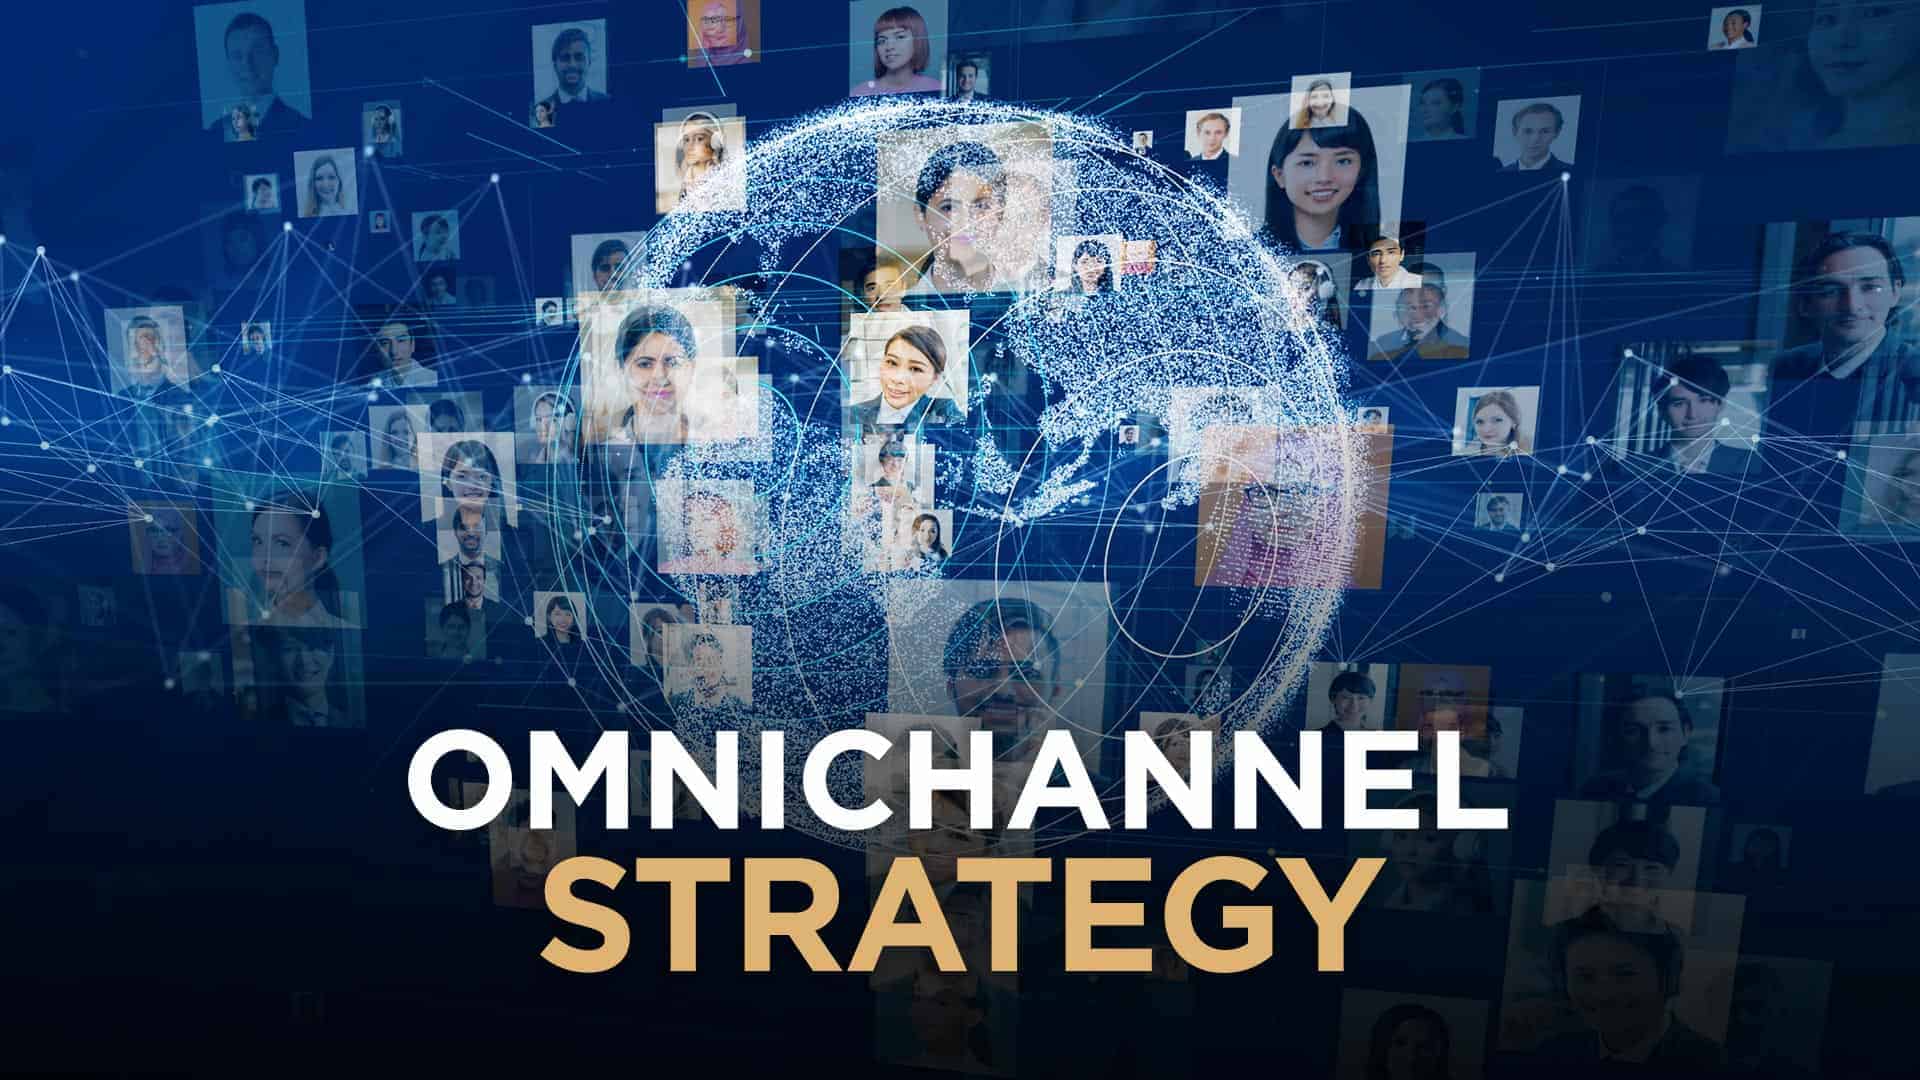 omnichannel-strategy